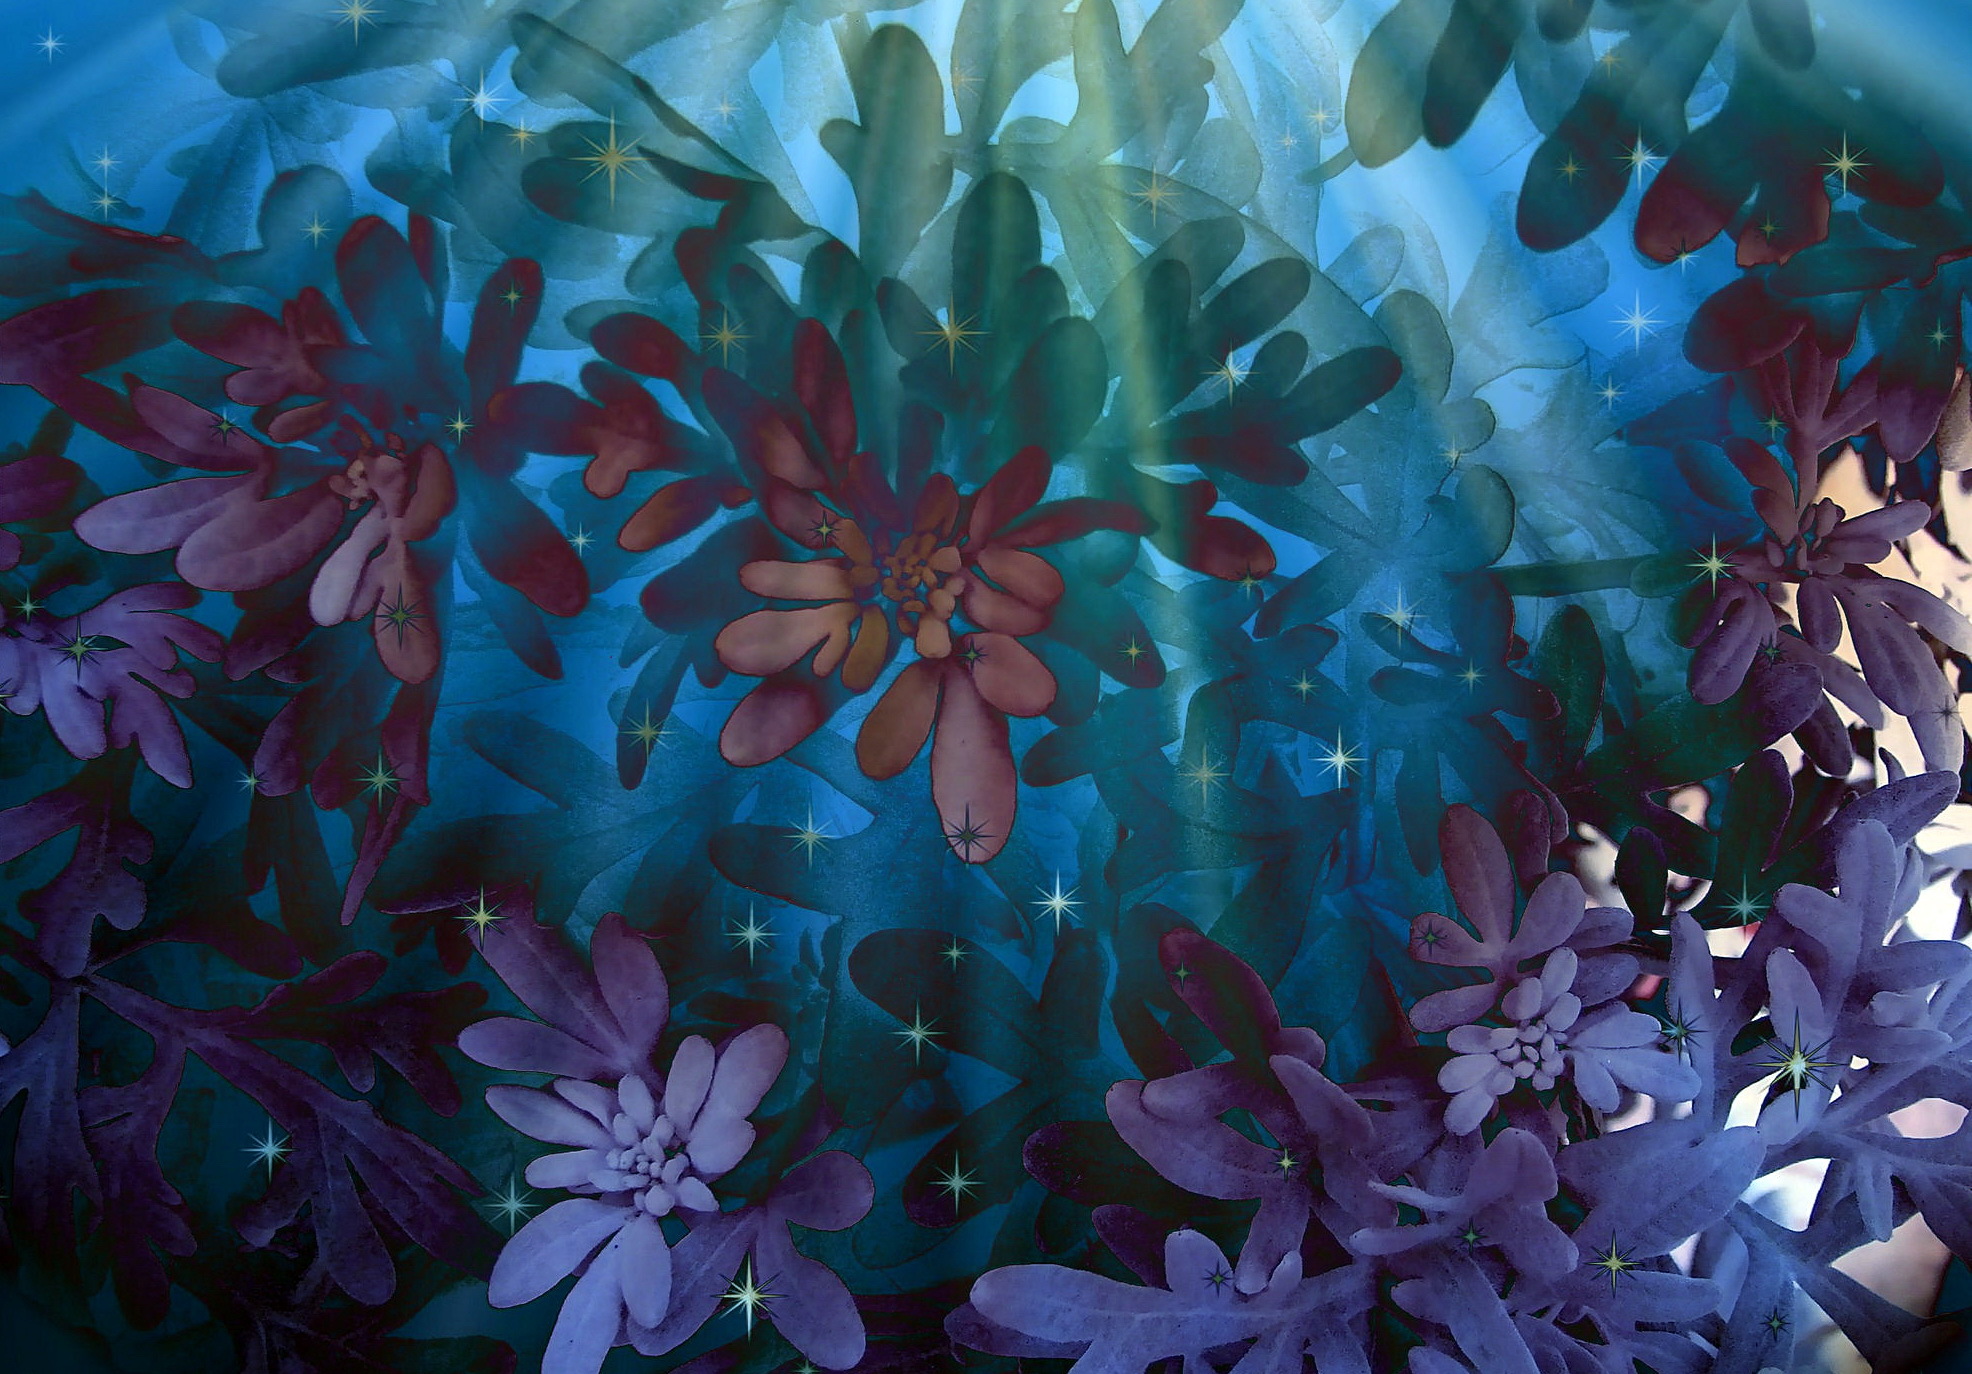 156202 免費下載壁紙 抽象, 花卉, 紫丁香, 模式, 蓝色, 蓝色的, 丁香 屏保和圖片